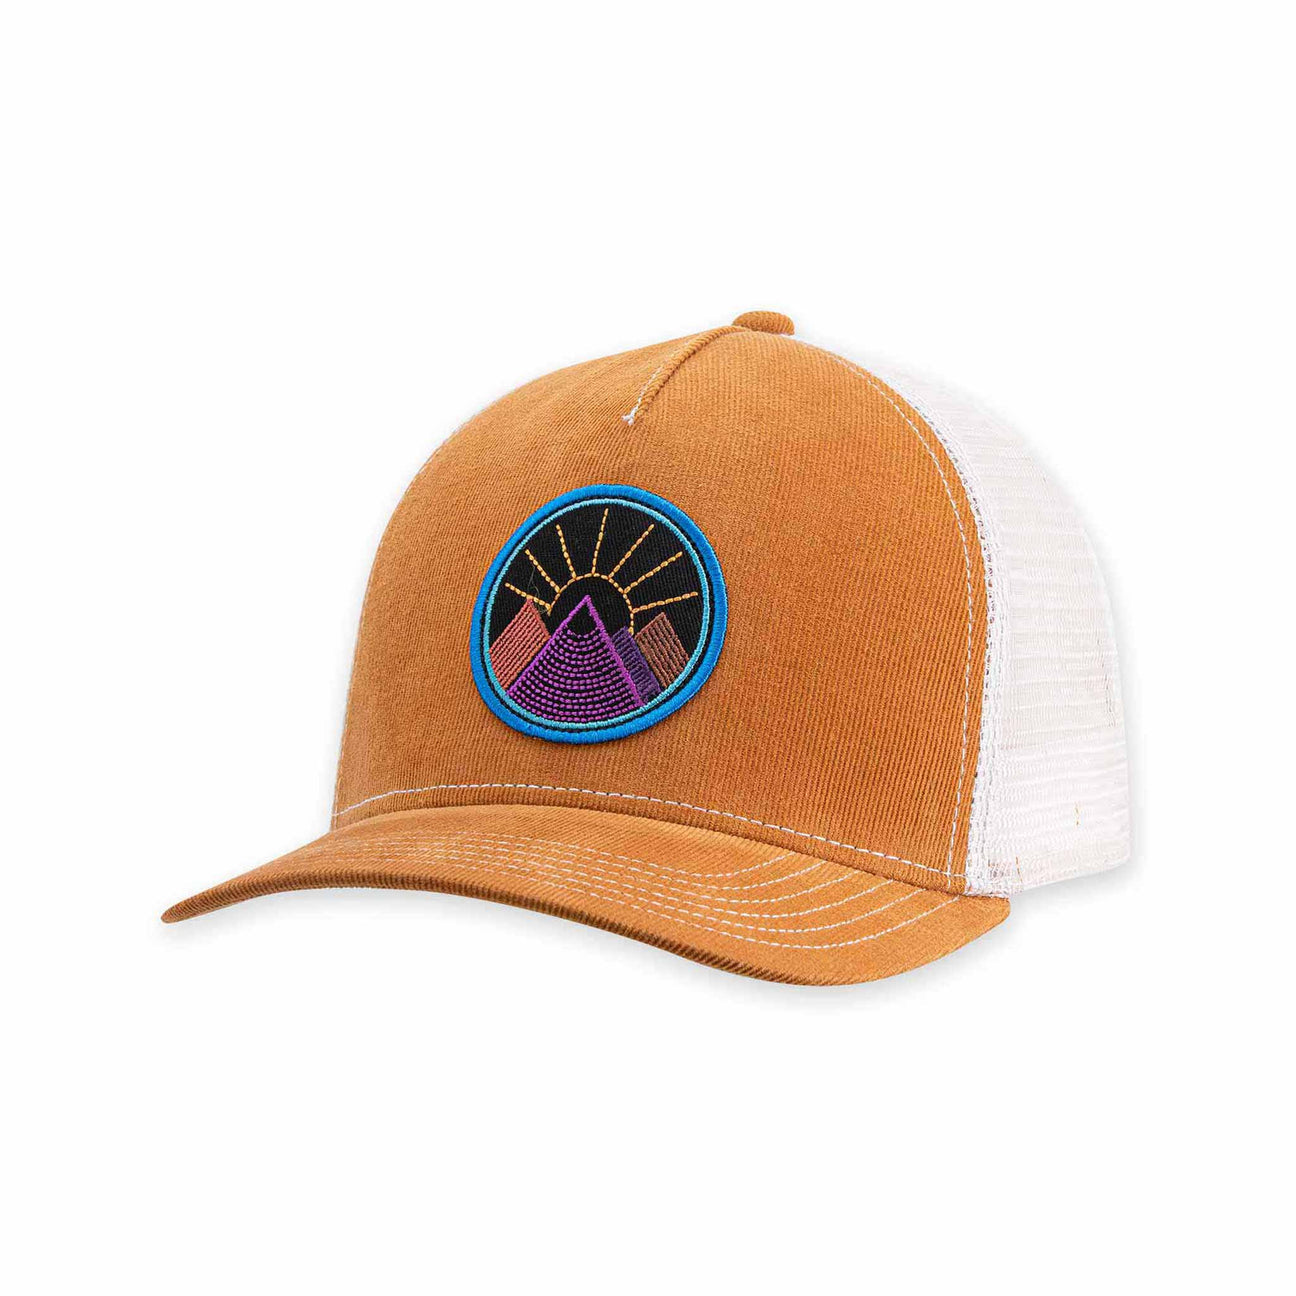 Viva Trucker Hat by Pistil Designs